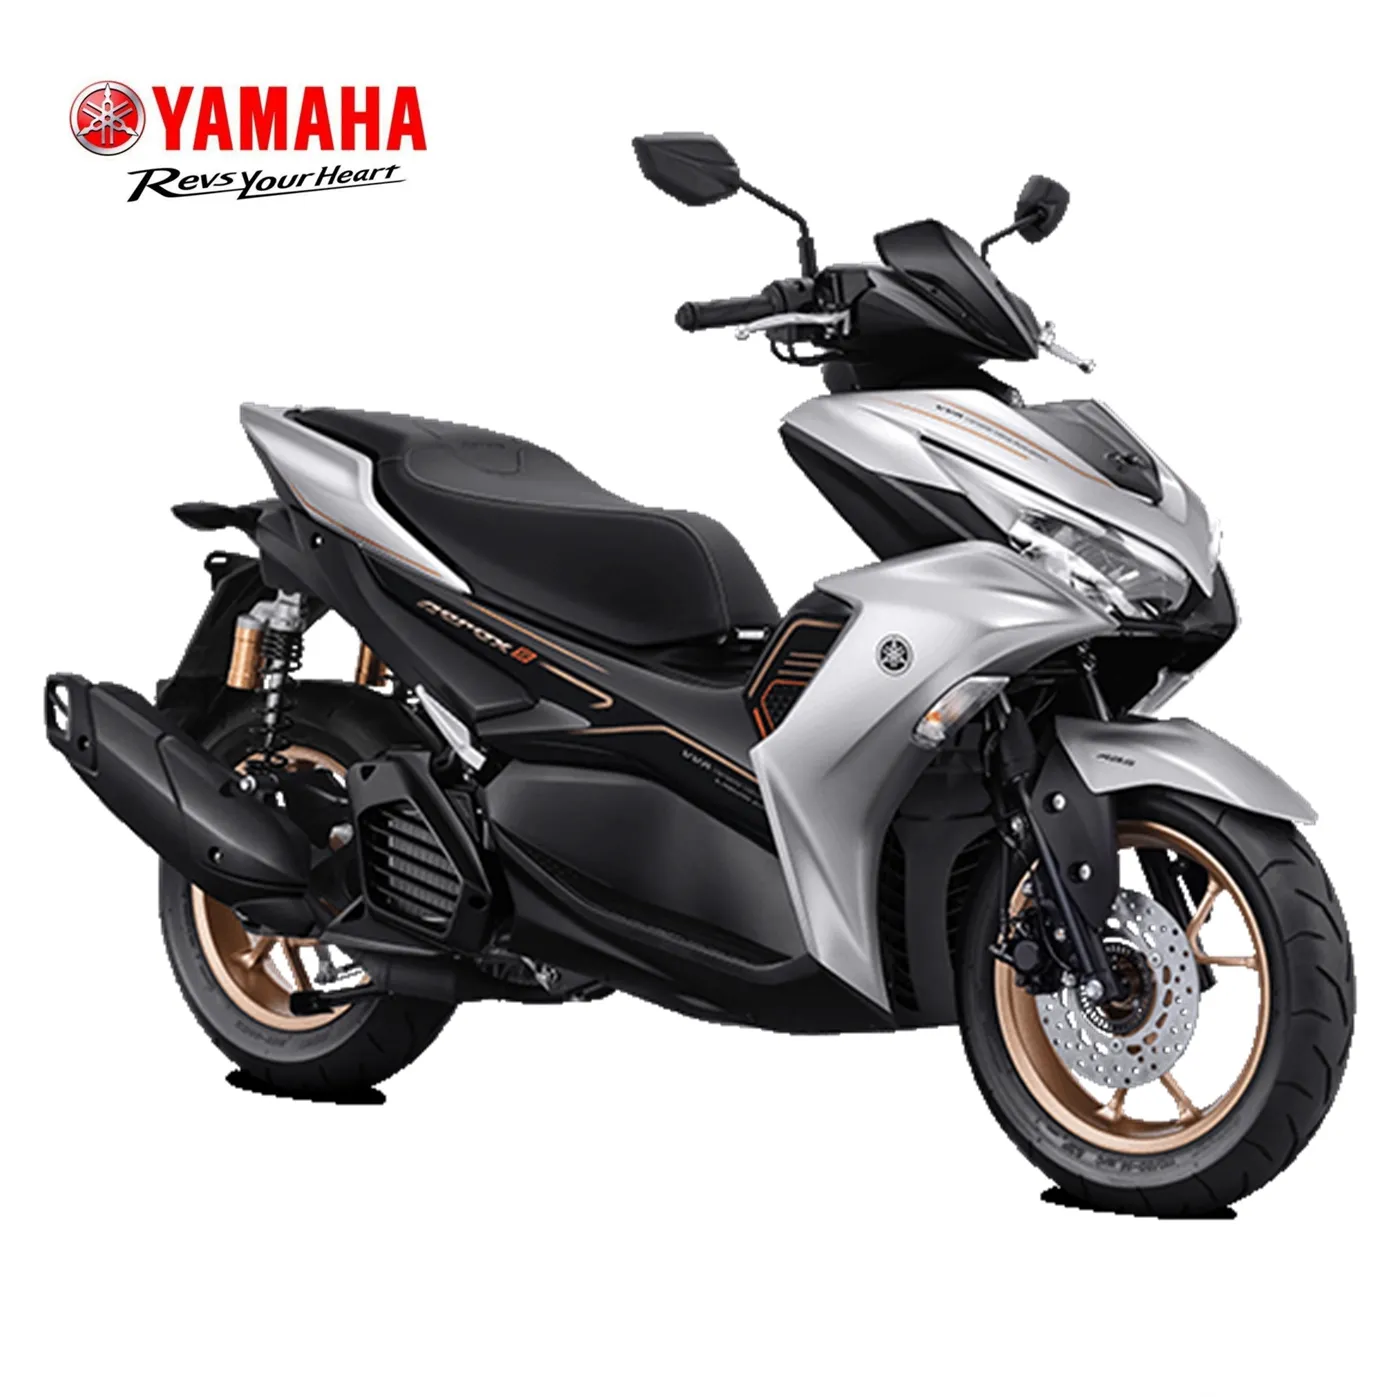 Yamaha-patinete eléctrico, Aerox155, ABS, conectado, novedad